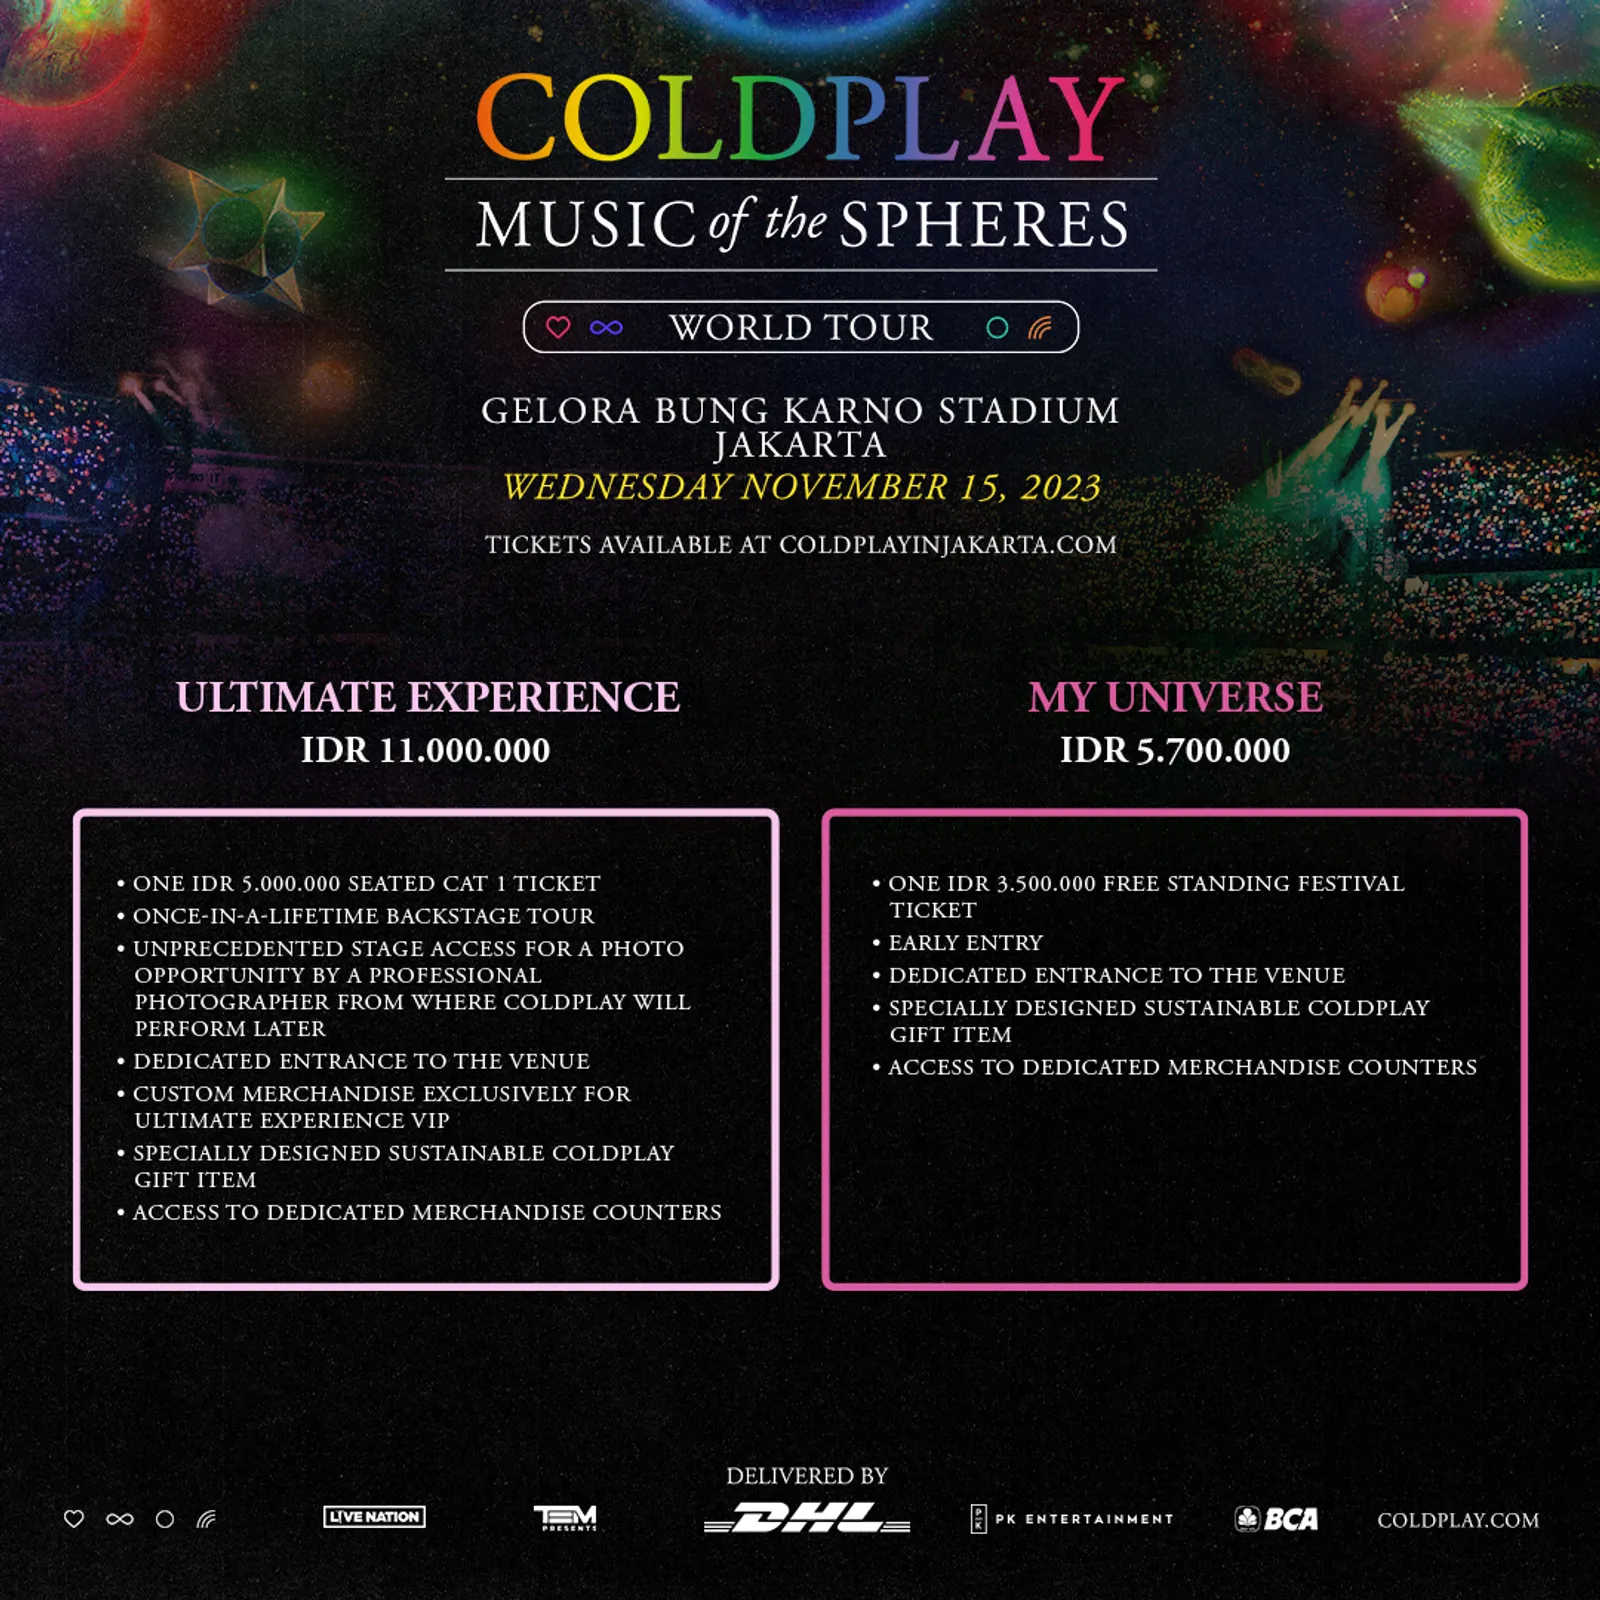 Resmi! Ini Daftar Harga Tiket Konser Coldplay, Siap-Siap War